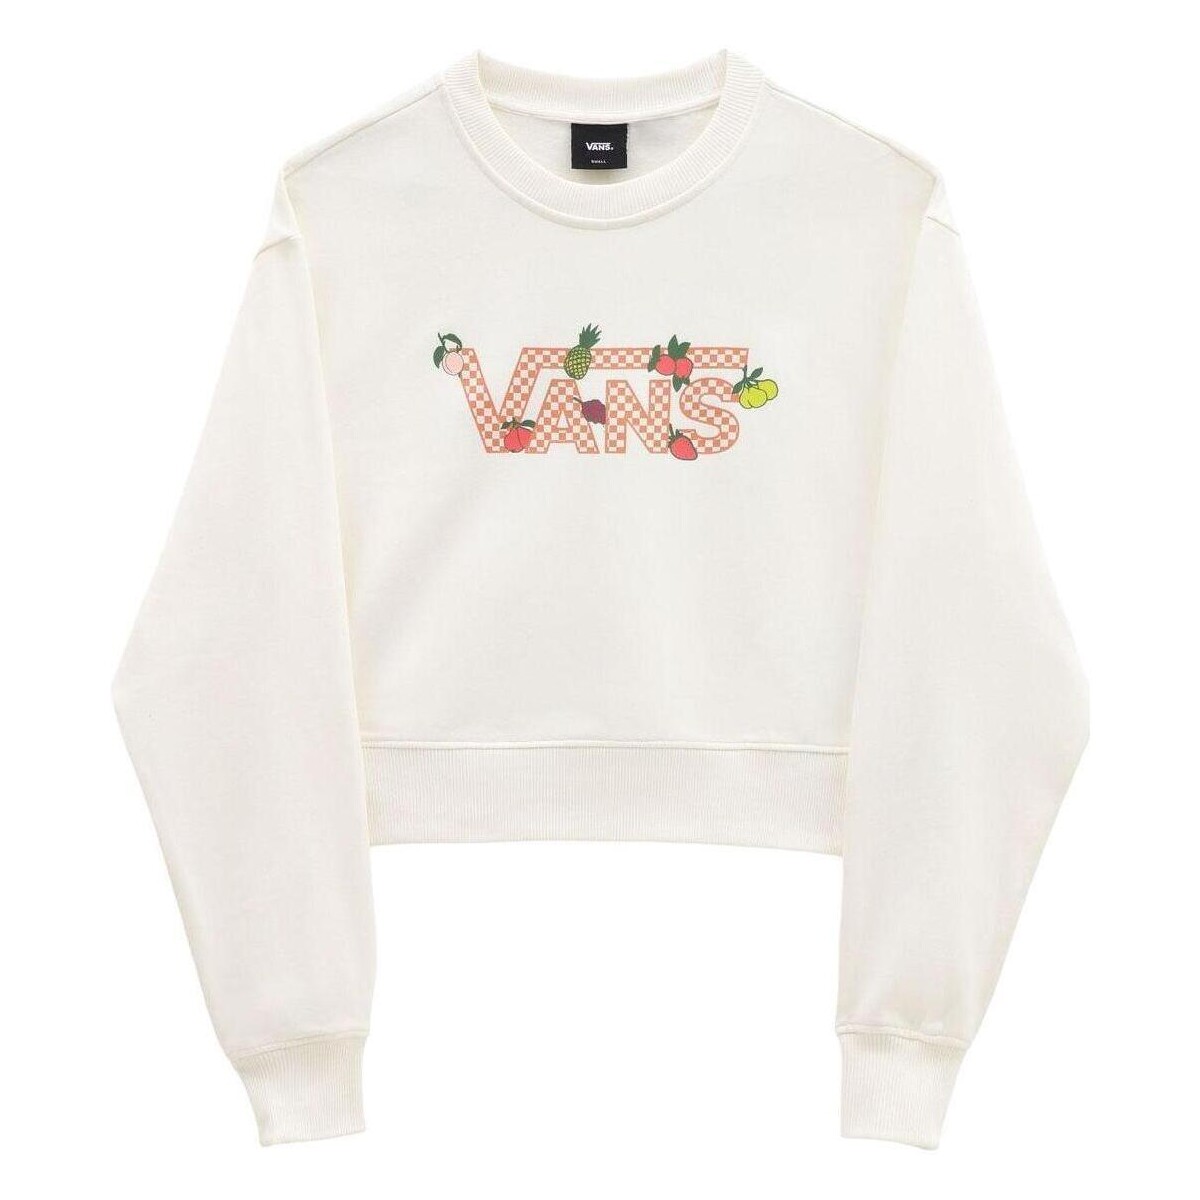 Textiel Dames Sweaters / Sweatshirts Vans  Beige